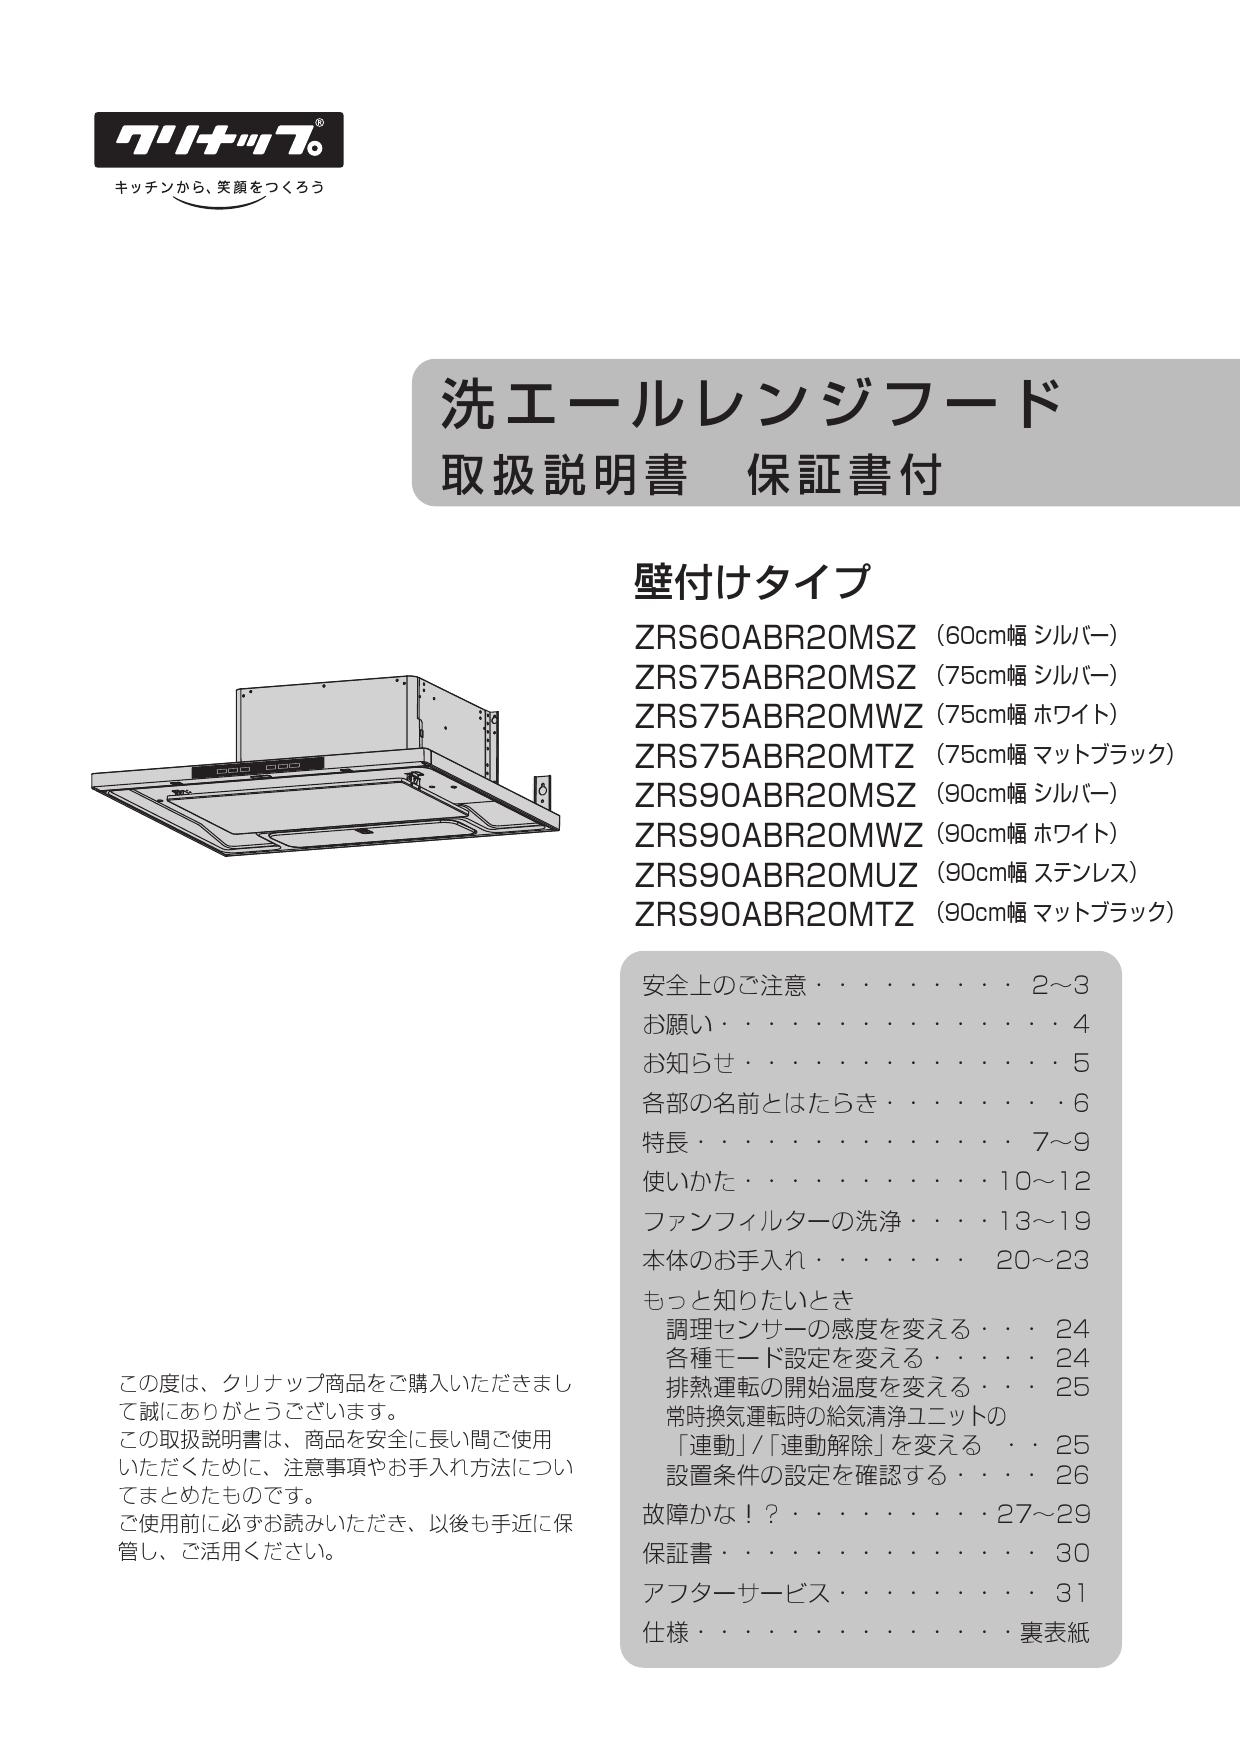 特価品コーナー☆ ZRS60ABR20MSZ 洗エールレンジフード クリナップ